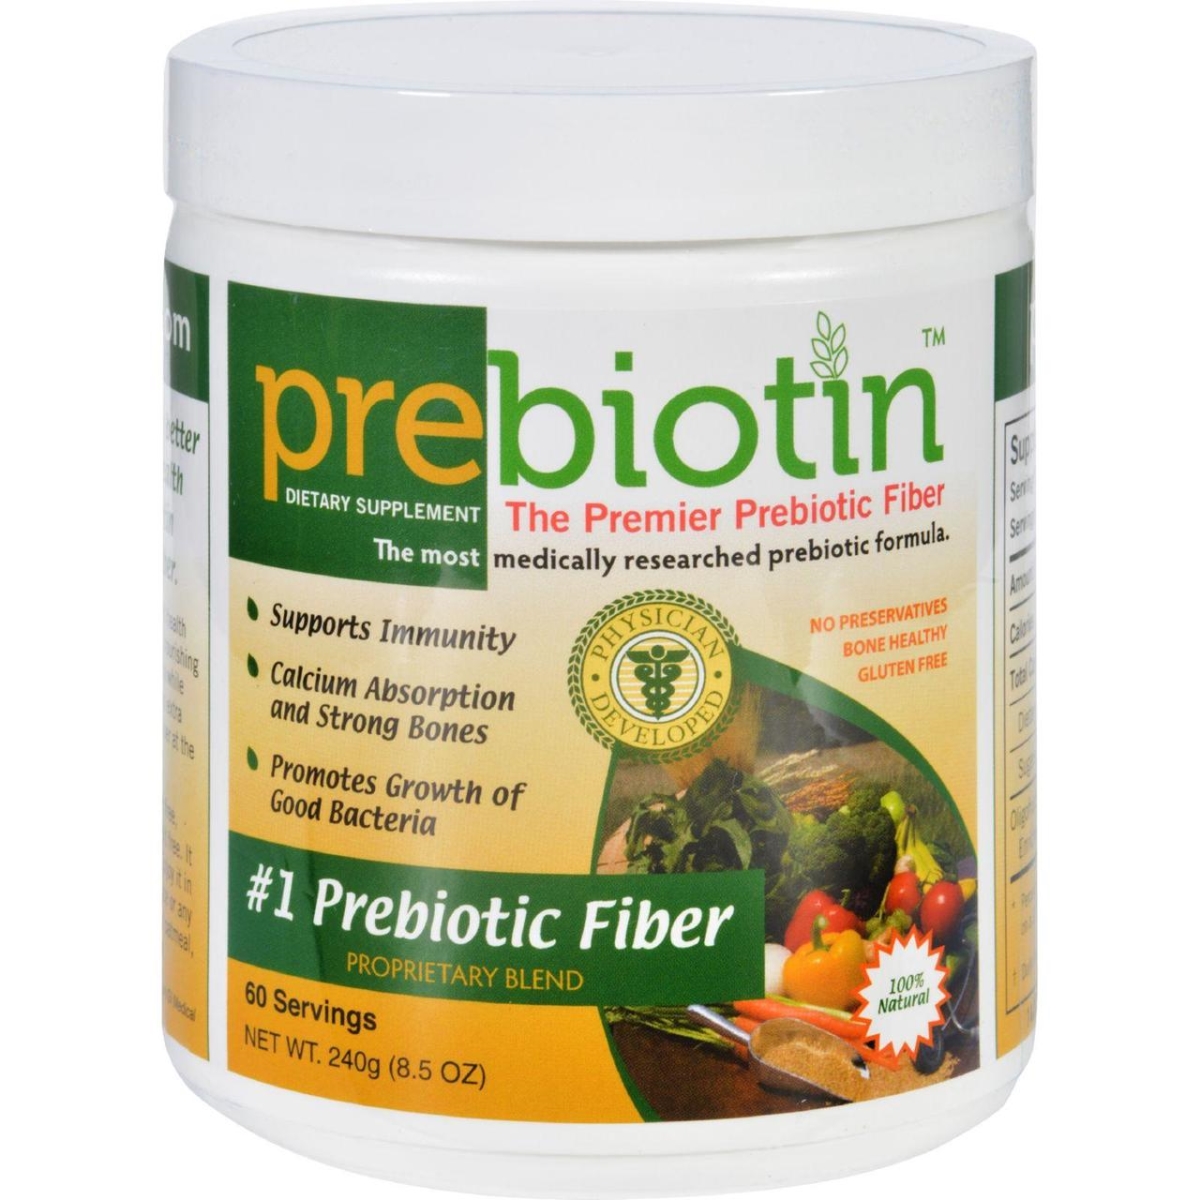 Hg1614015 8.5 Oz Prebiotic Fiber